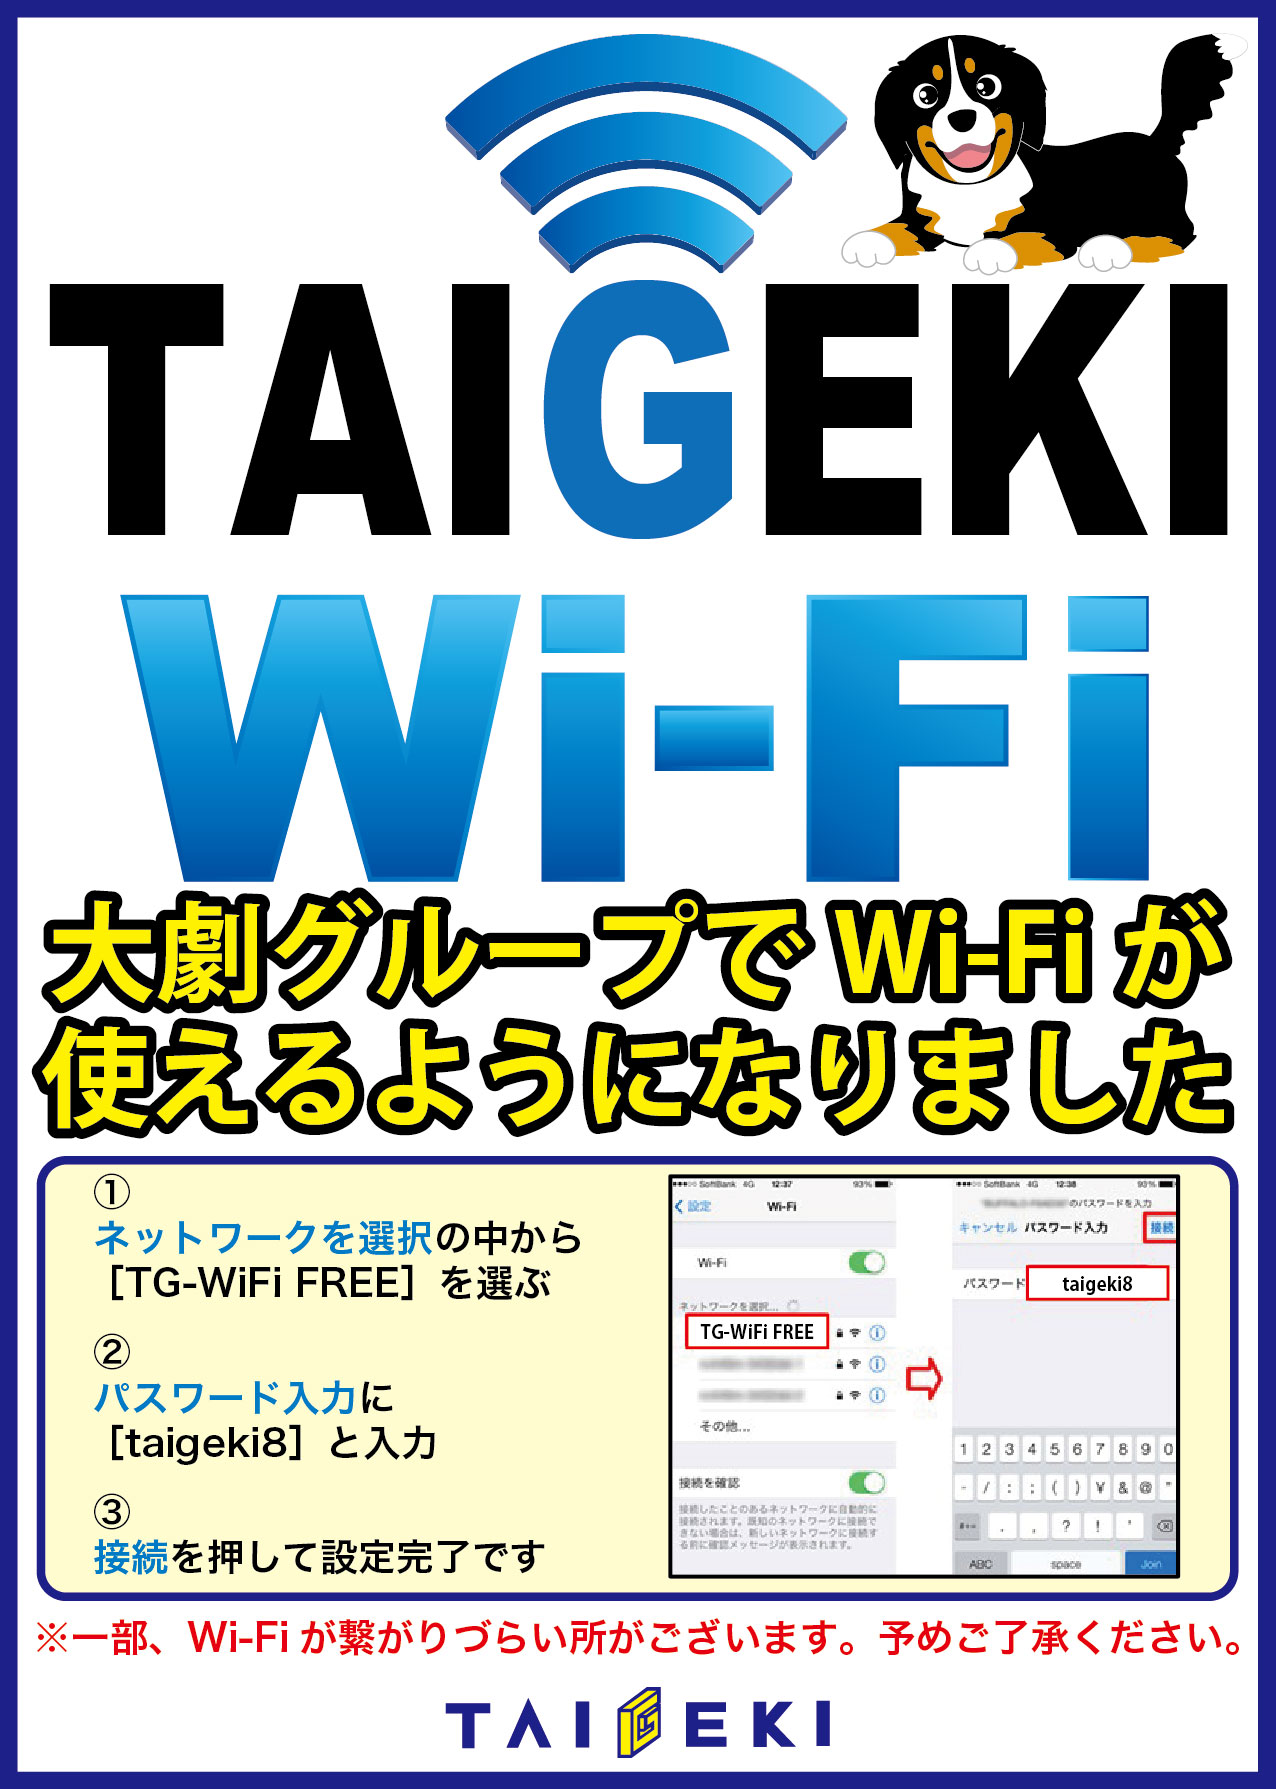 TAIGEKI Wi-Fi